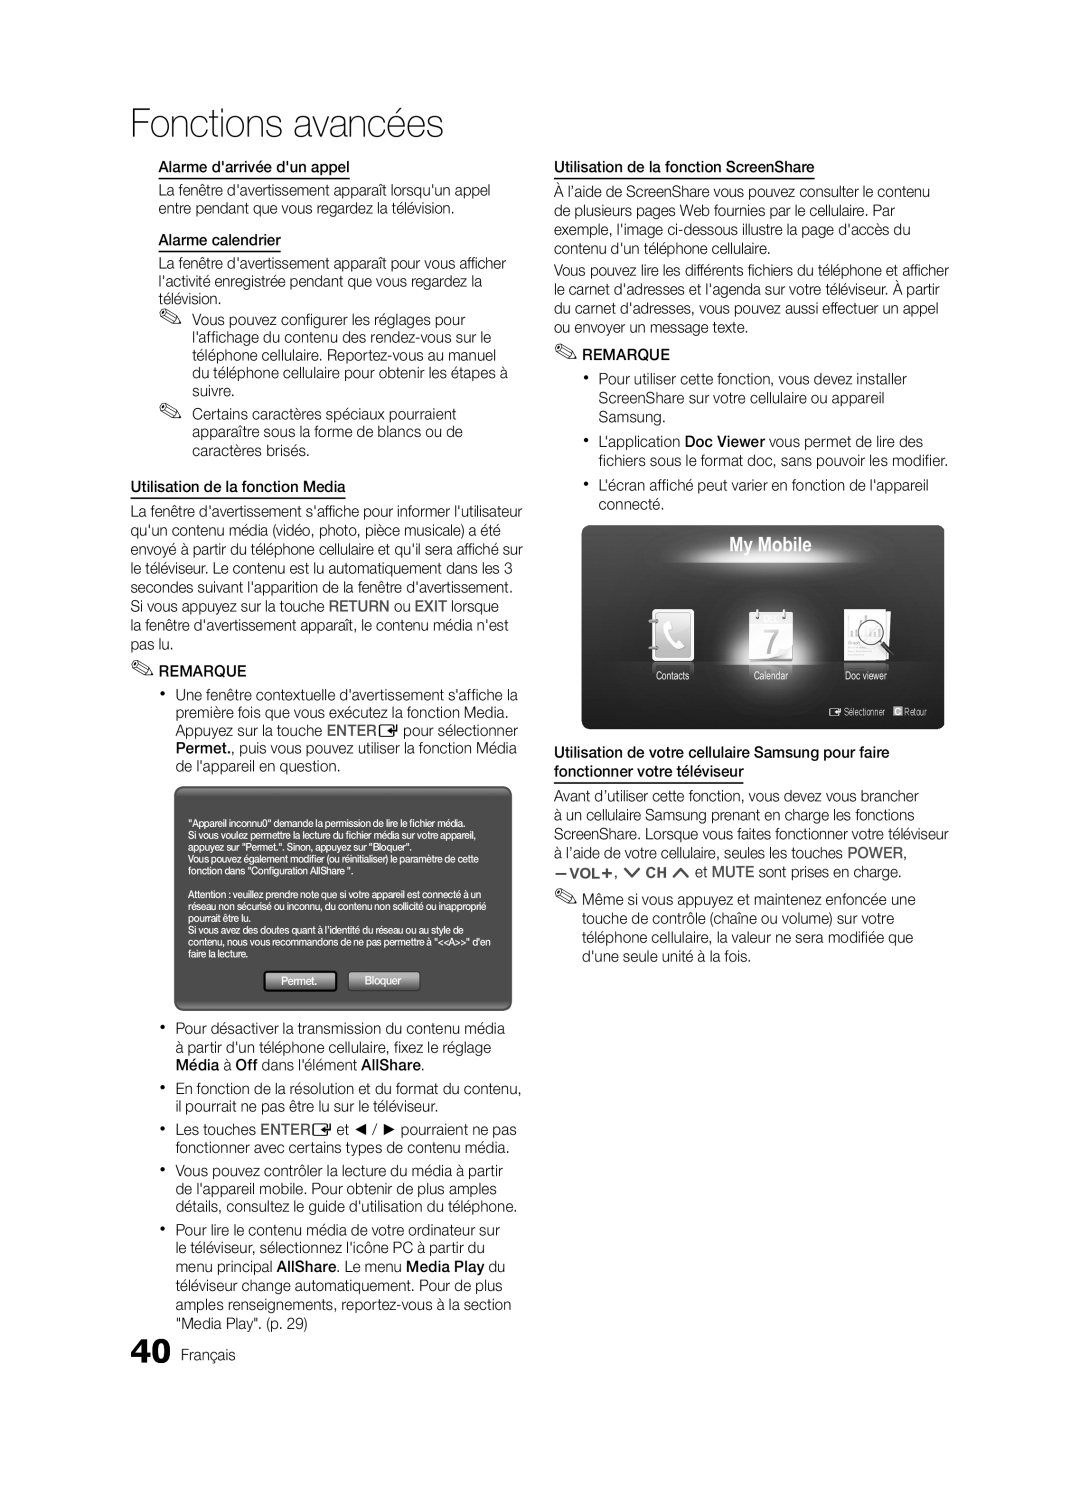 Samsung LN32C550 user manual Fonctions avancées, My Mobile, ESélectionner, Retour 